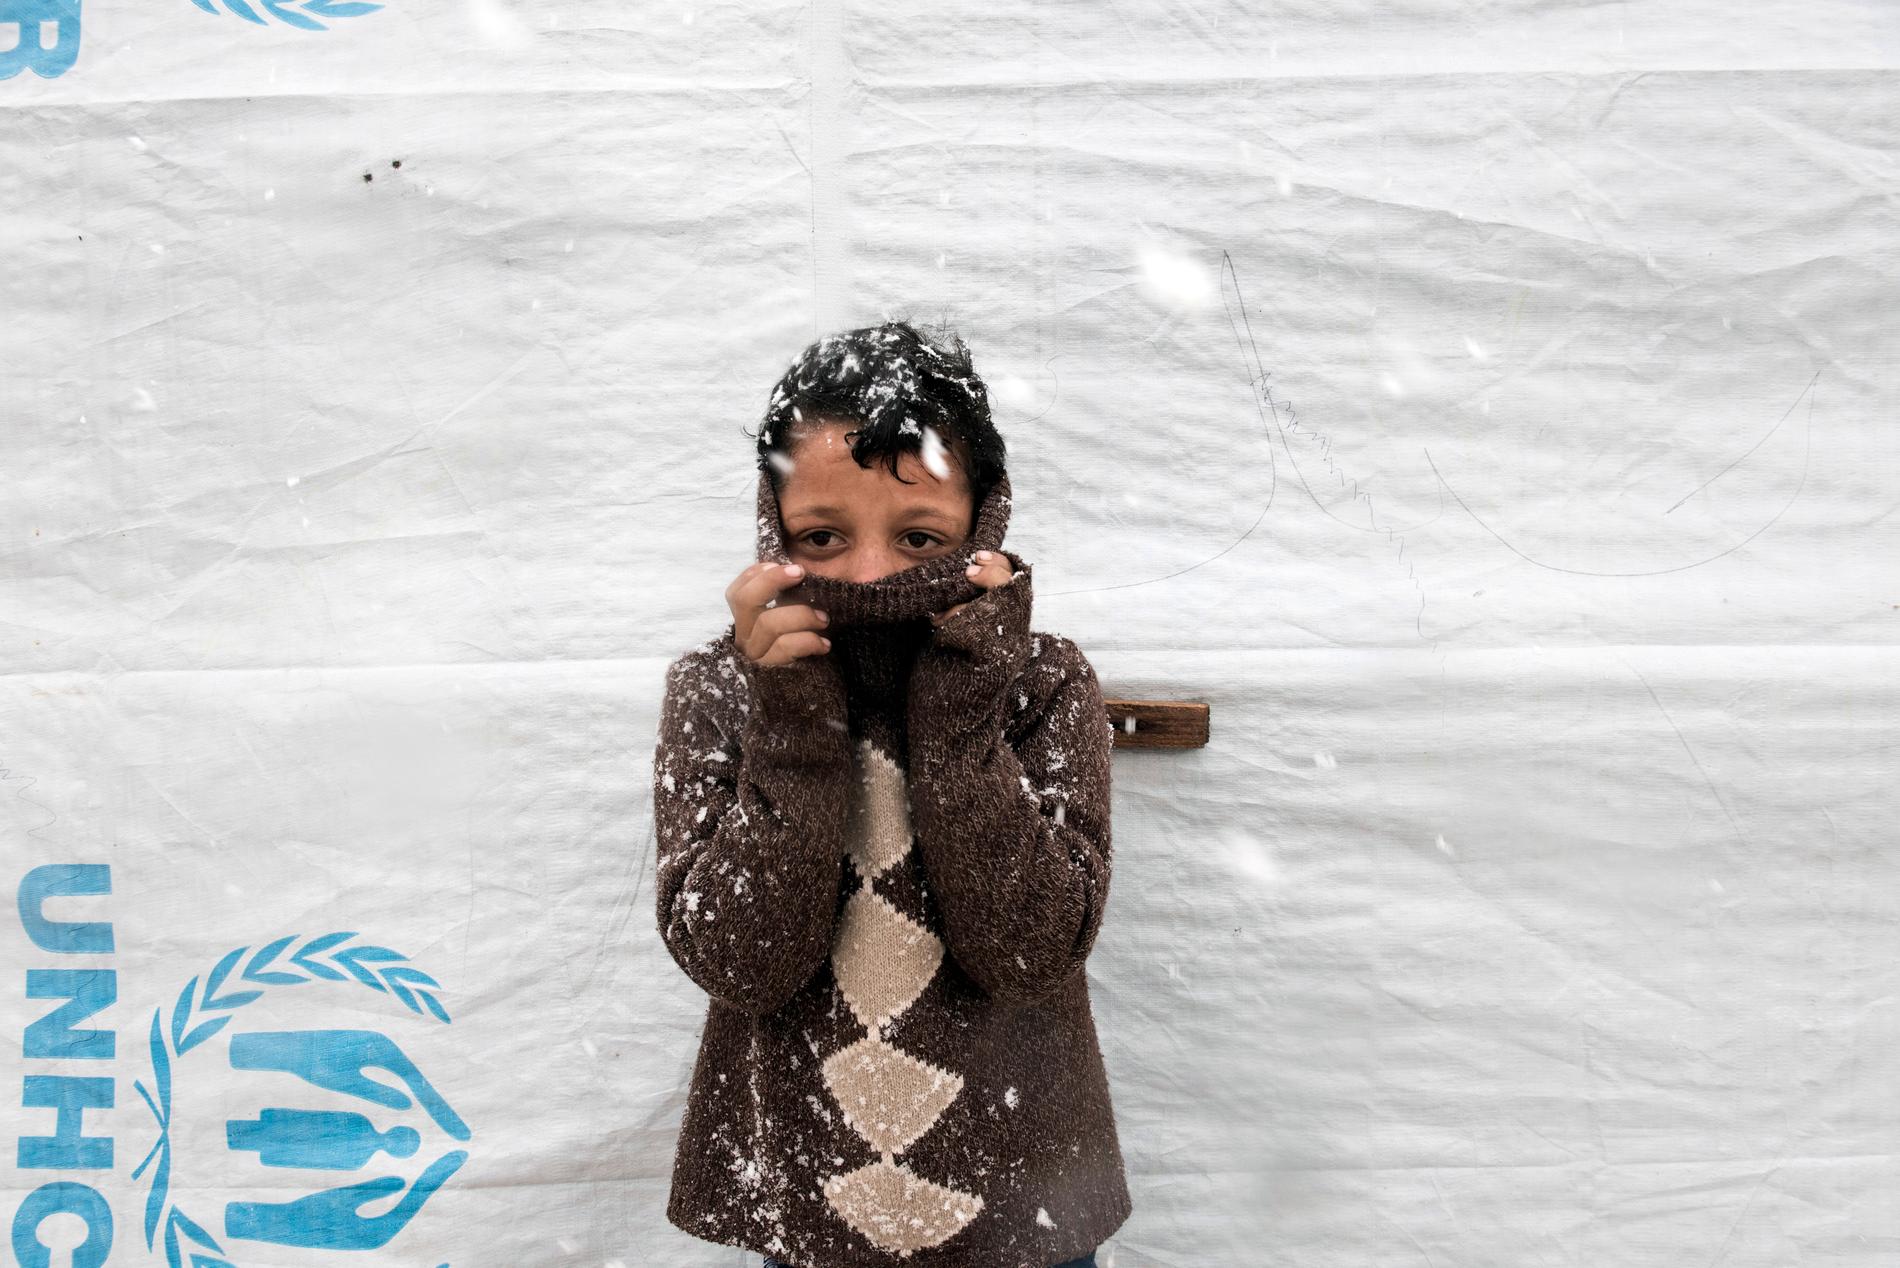 Omar, 11, saknar vantar och mössa.  Han gömmer sitt ansikte i den tjocka tröjan för att undvika kylan. I Bekaadalen kan snön och minusgraderna stoppa de dåligt klädda barnen från att gå till skolan.